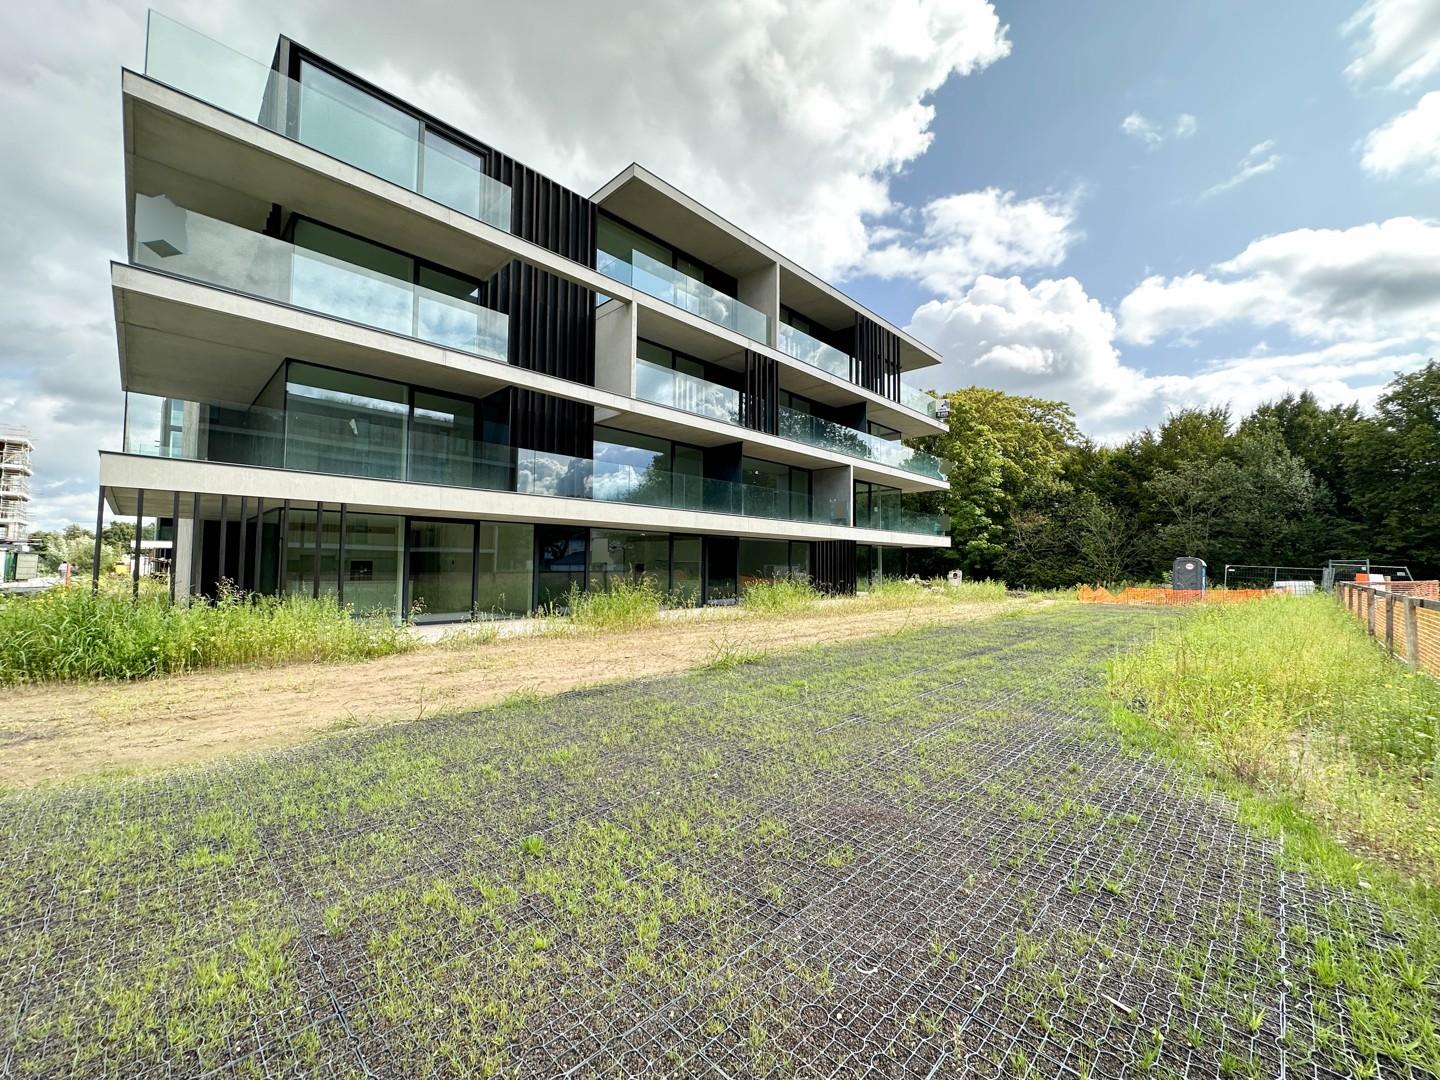 Energiebewust nieuwbouwappartement met 2 slaapkamers, terras en garage in de groene omgeving van Izegem!